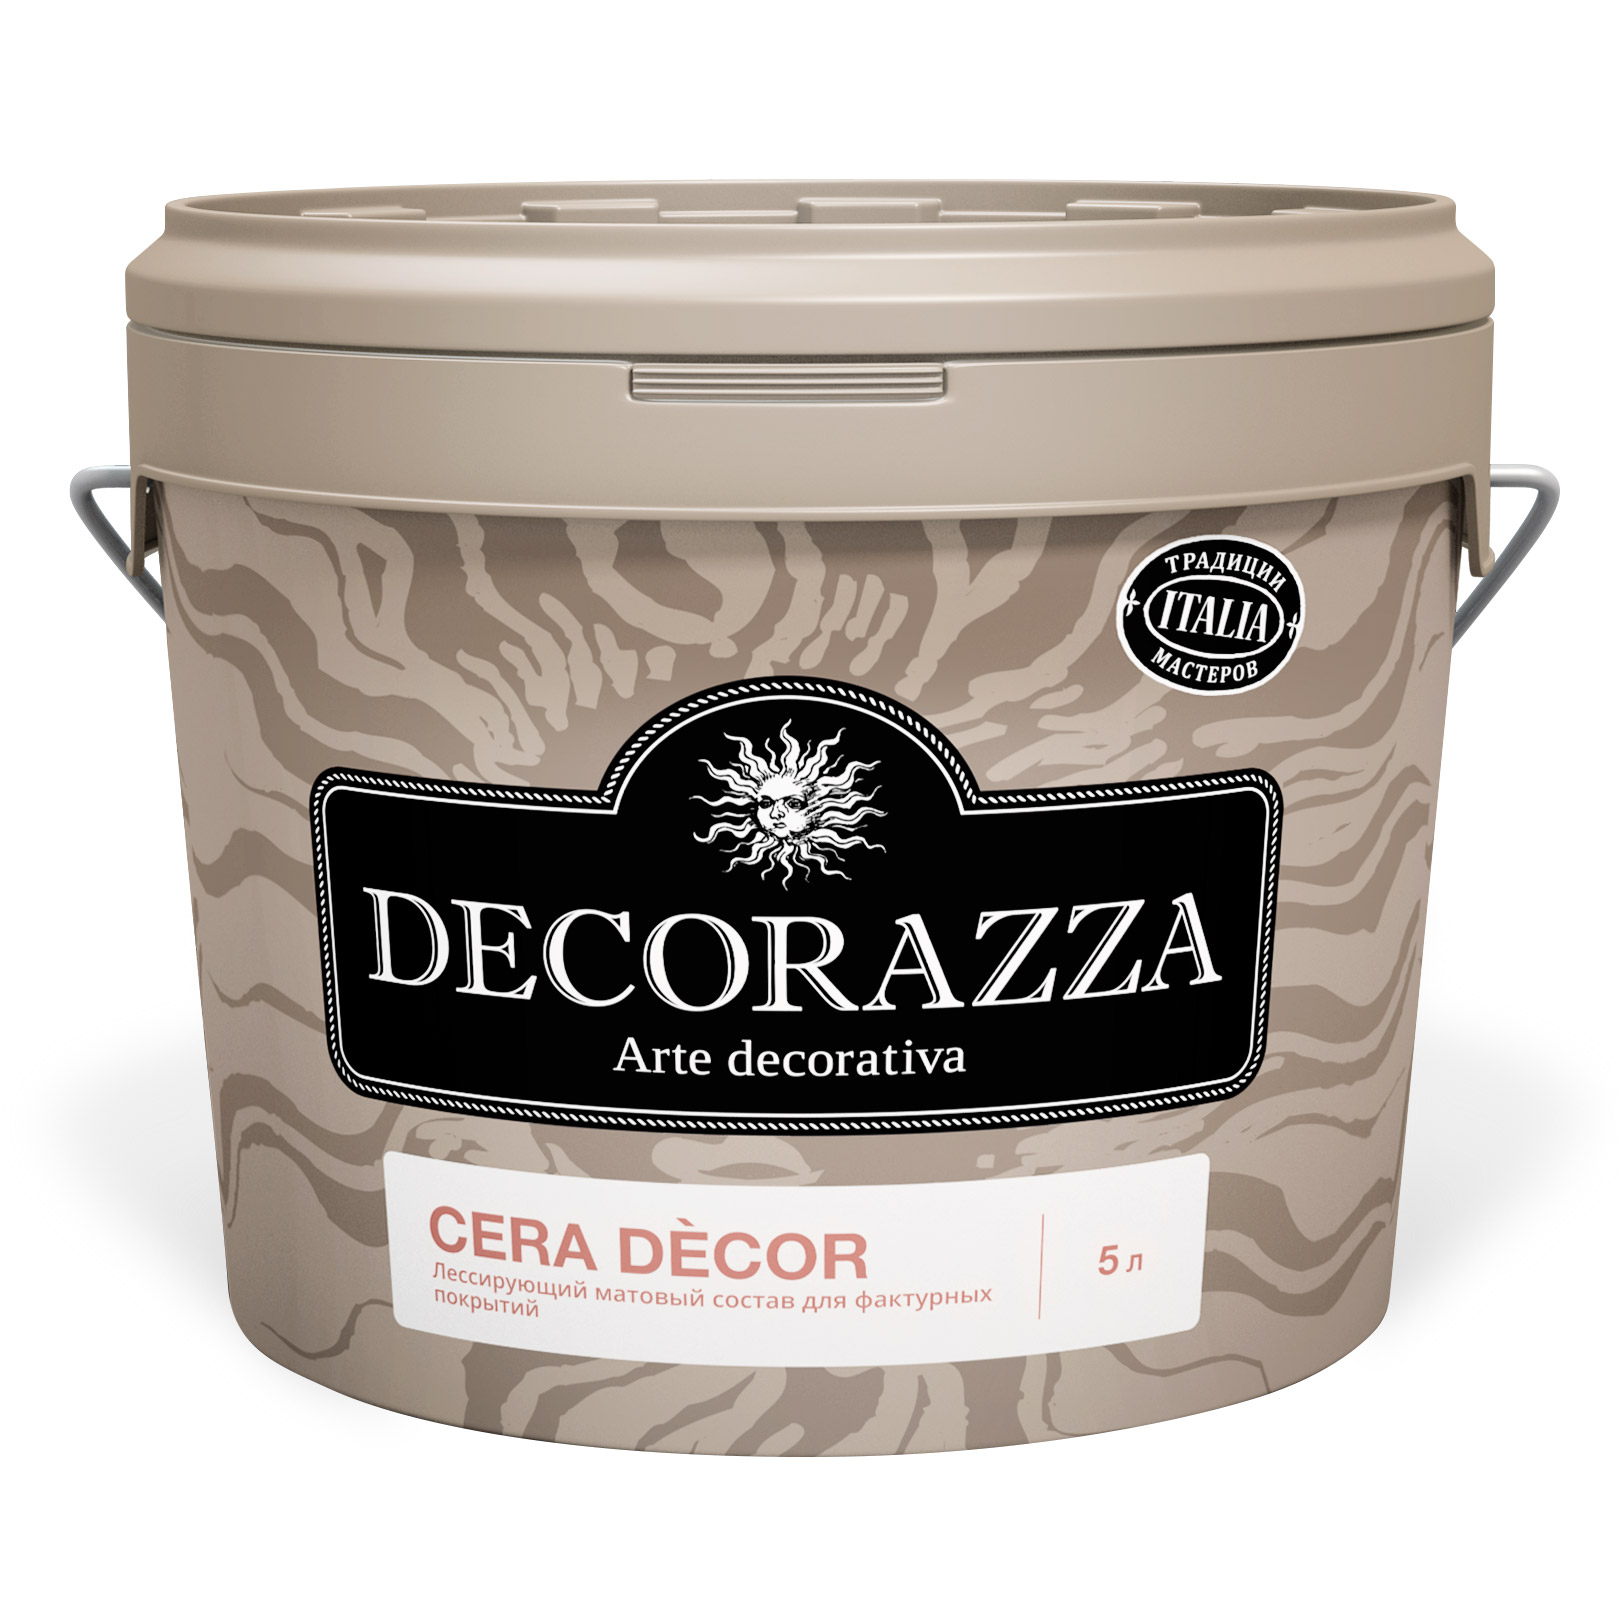 Воск Decorazza для штукатурок Cera Decor 1 кг (DCD-09) воск защитный vincent decor cera realta для известковых декоративных покрытий 1 л